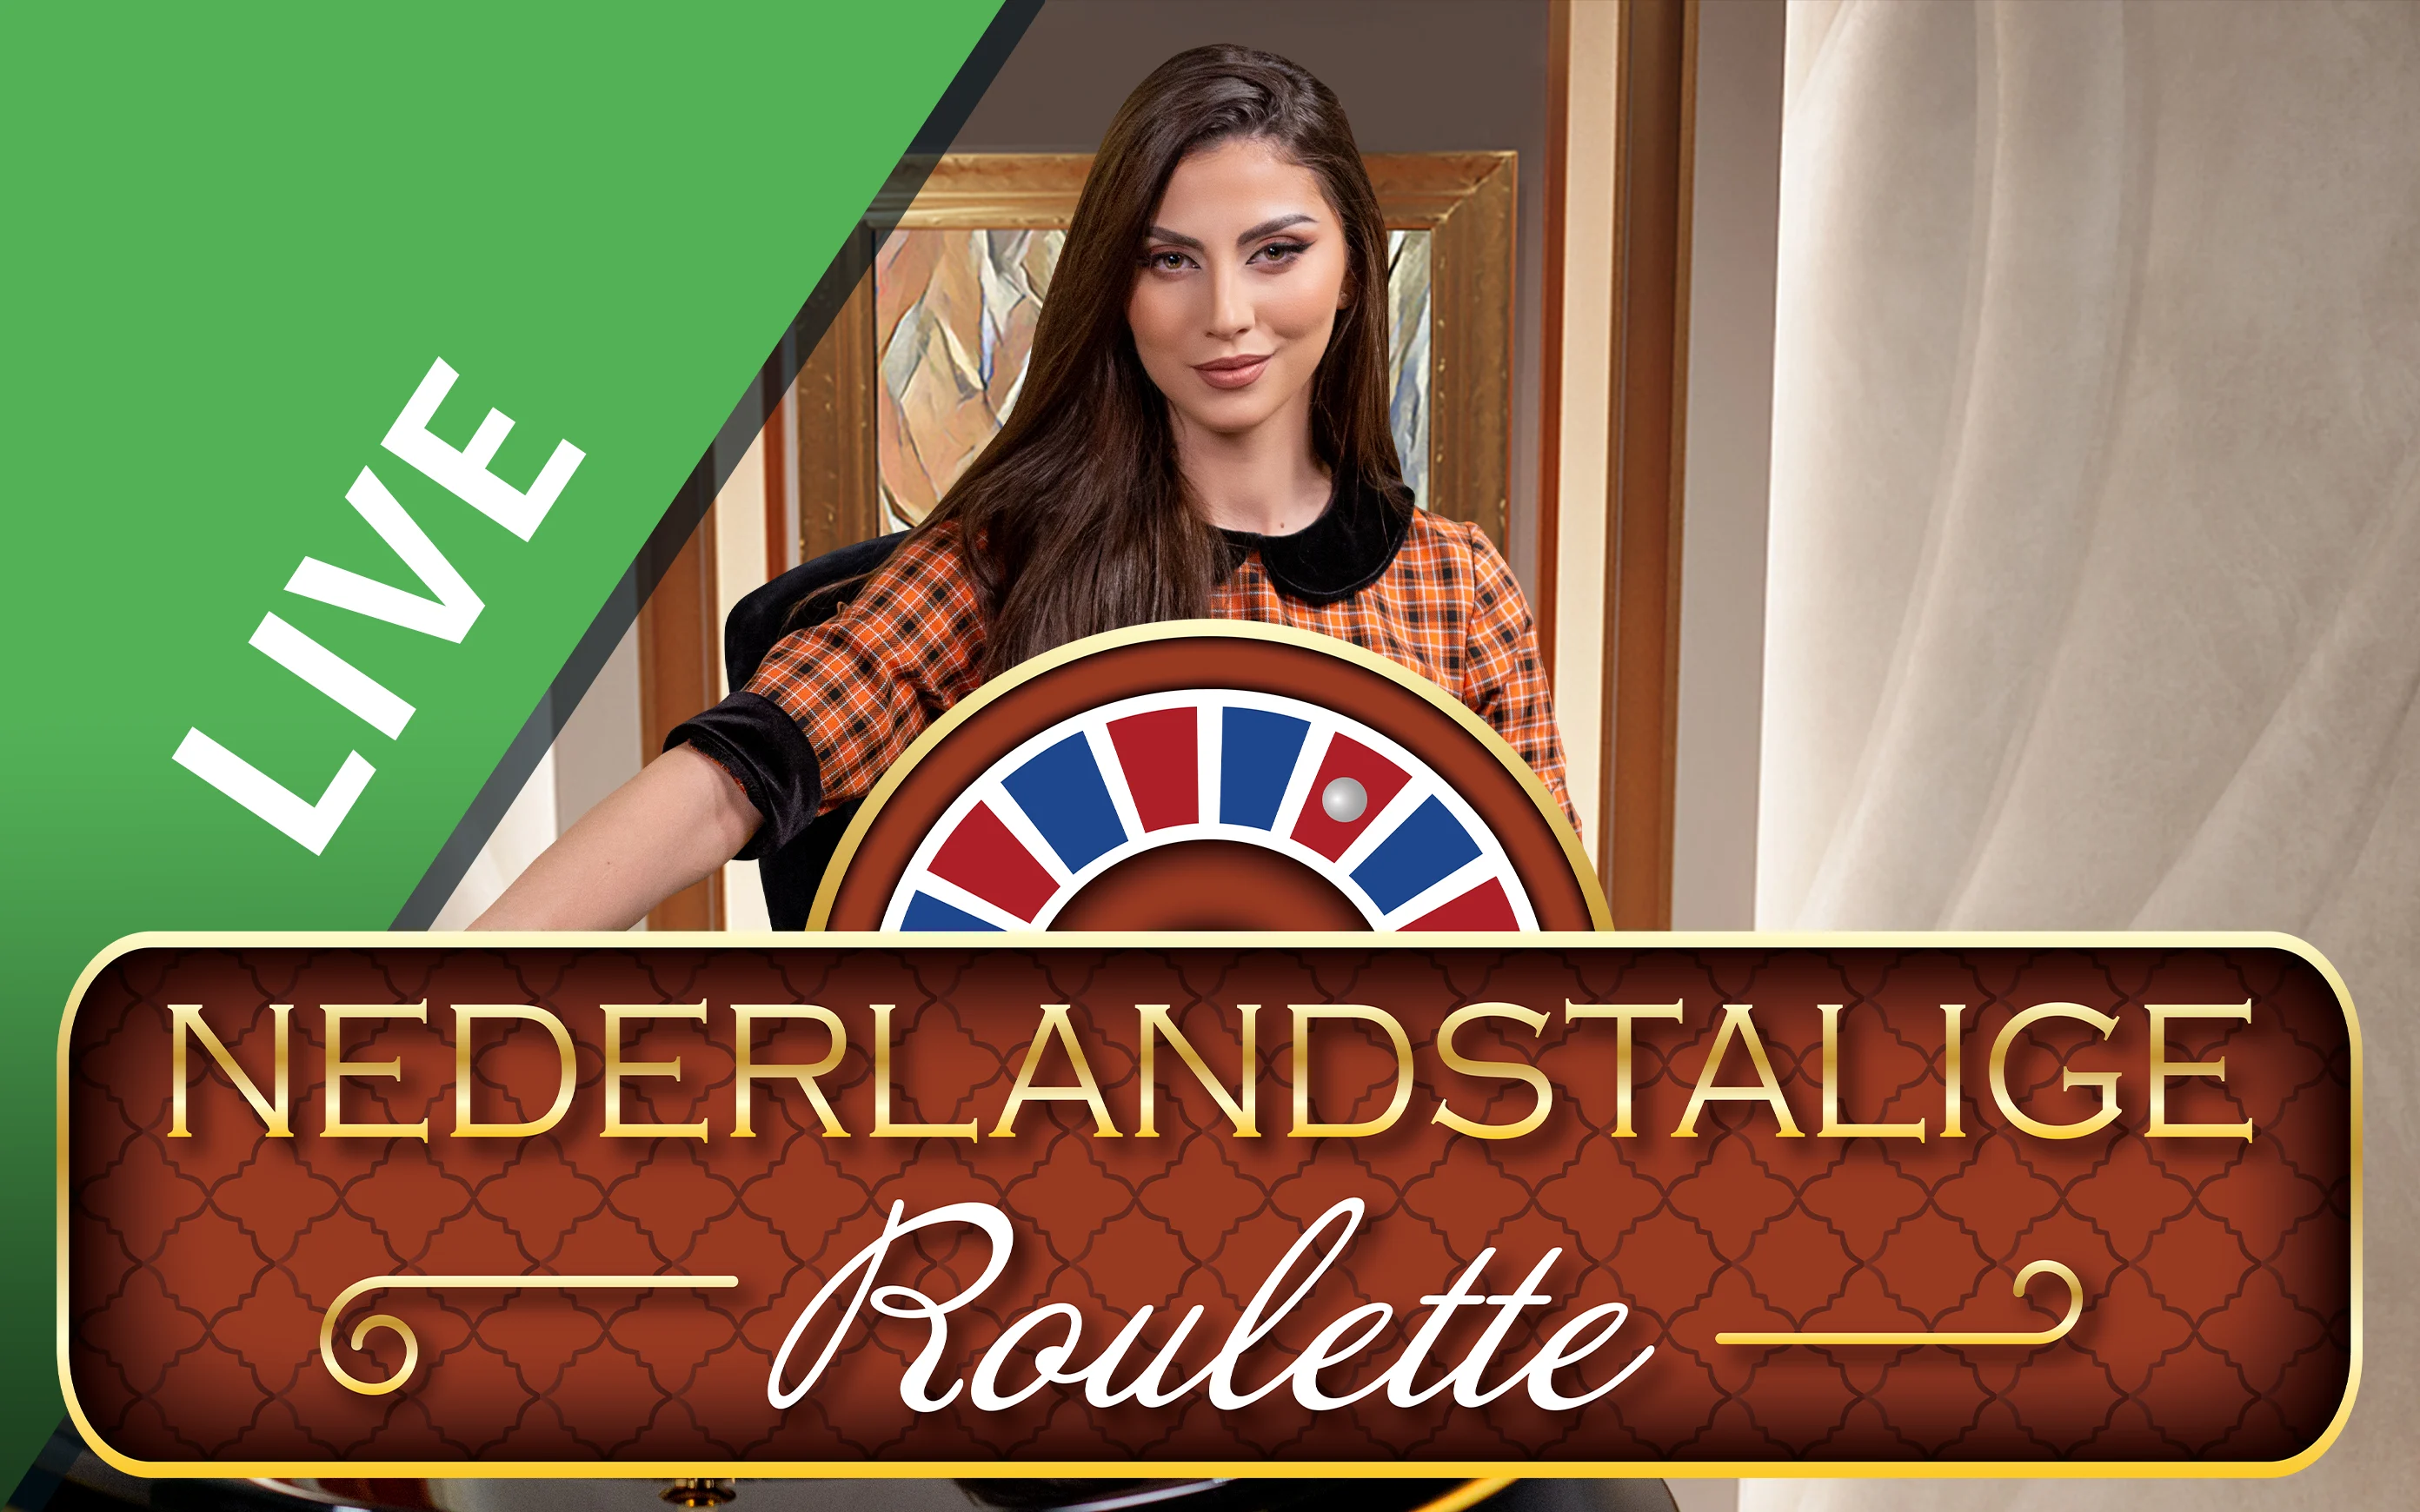 Jouer à Nederlandstalige Roulette sur le casino en ligne Starcasino.be